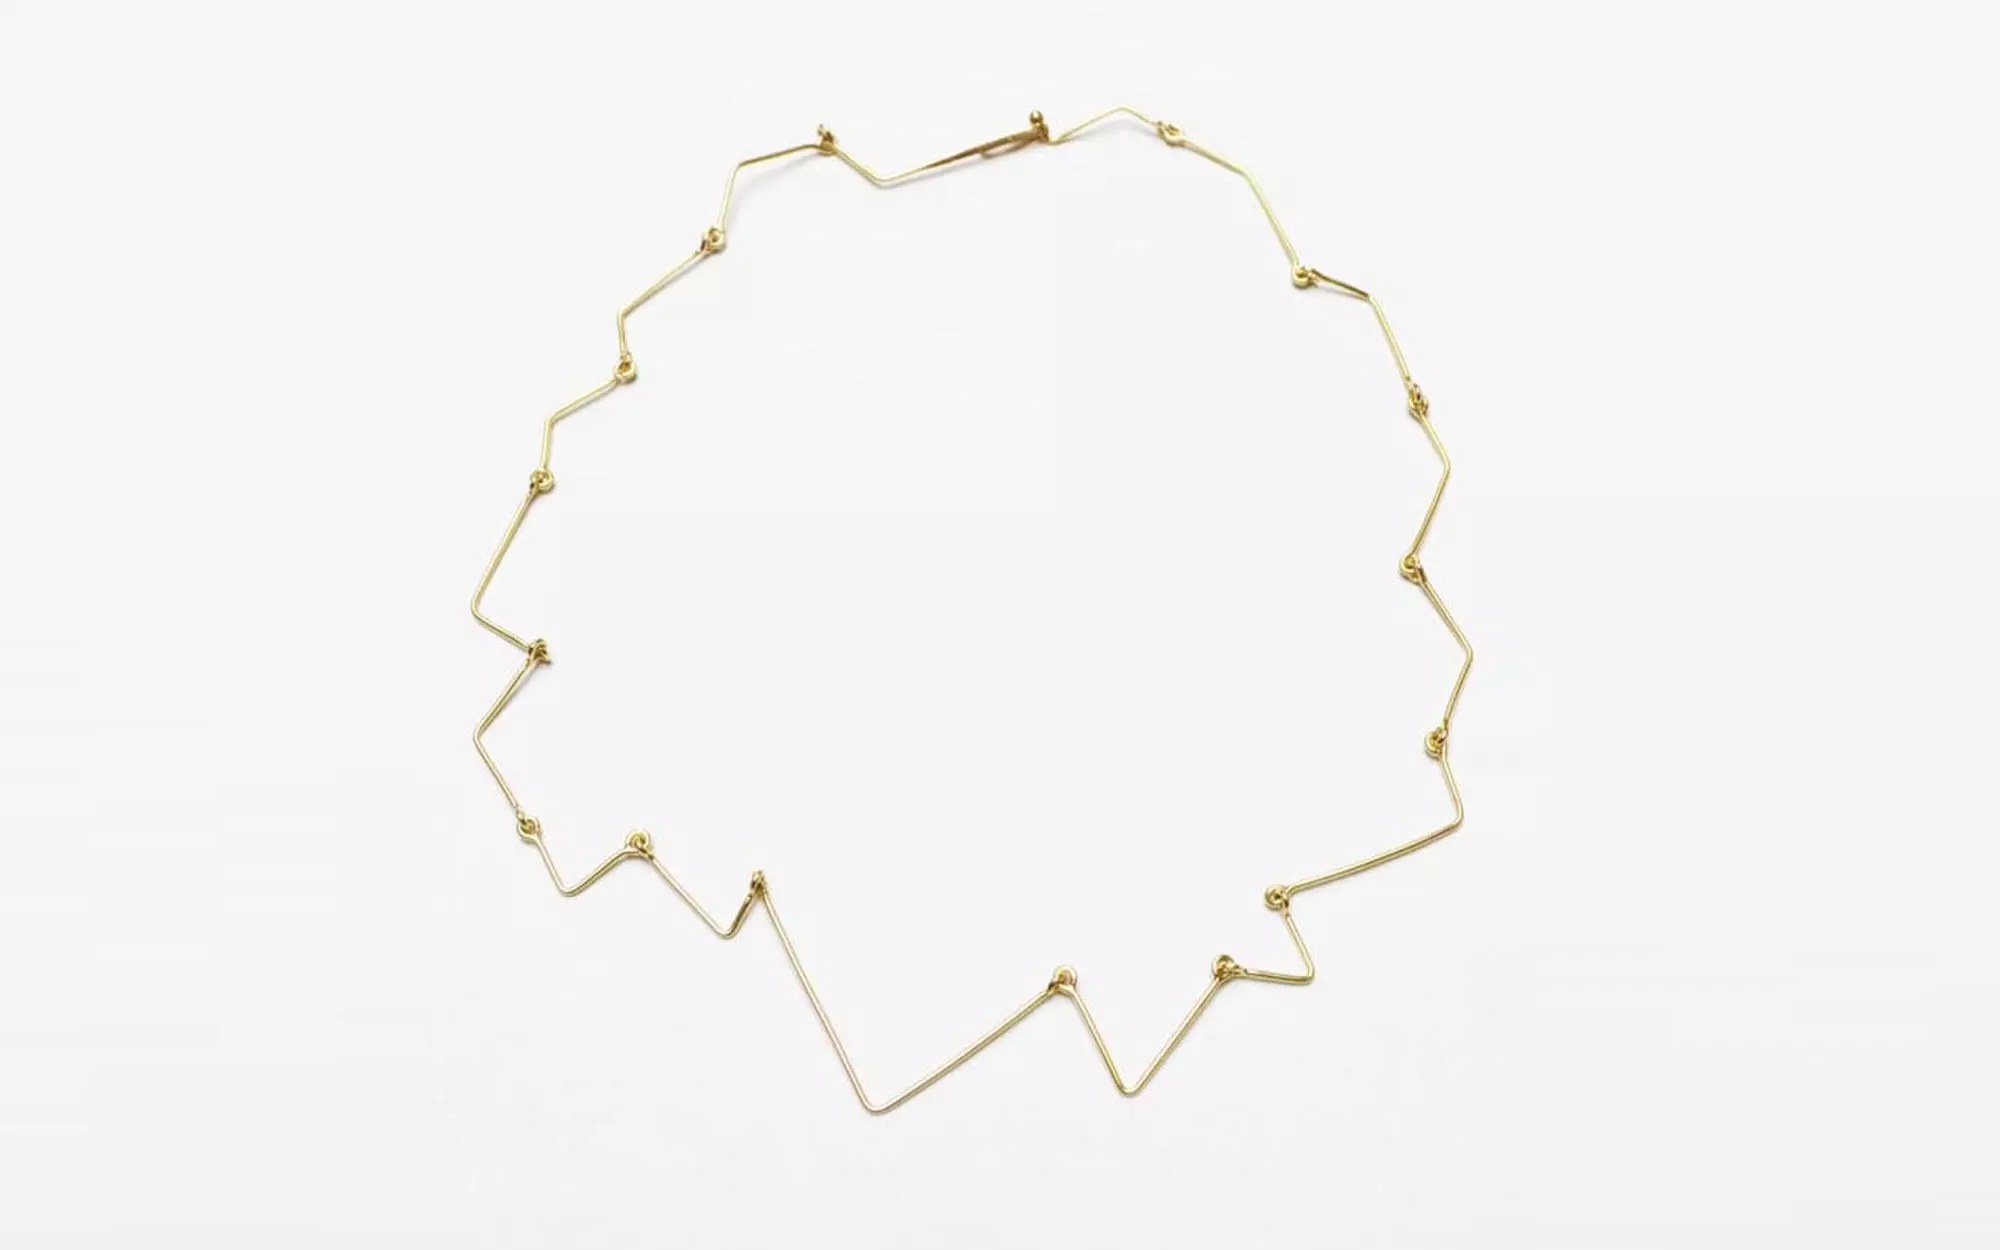 Cou de foudre Yellow Gold - Dominique Modiano - jewellery - Galerie kreo